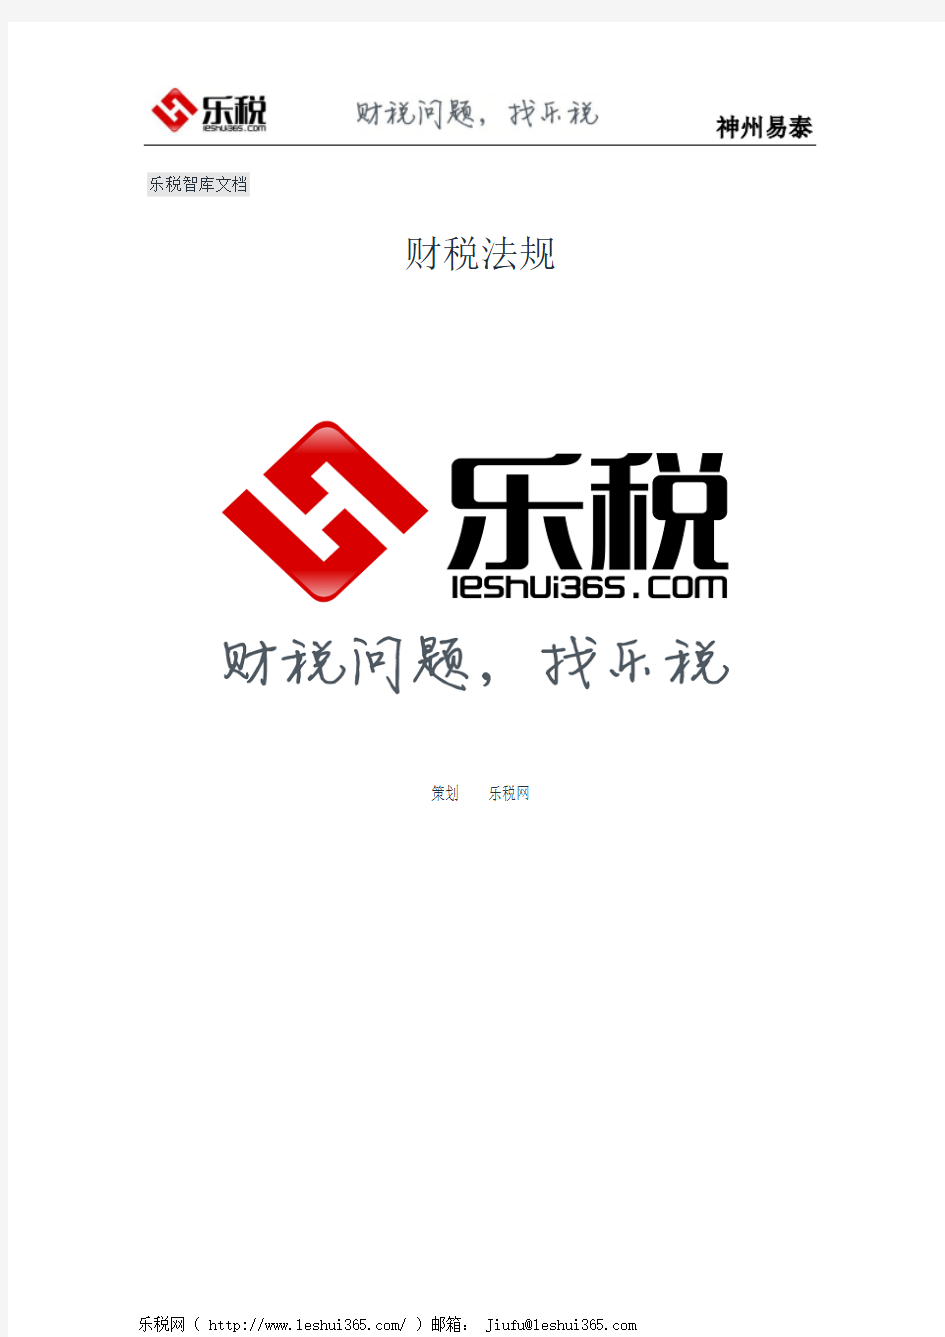 云南省国家税务局关于防范和打击骗取出口退税违法犯罪行为的通知